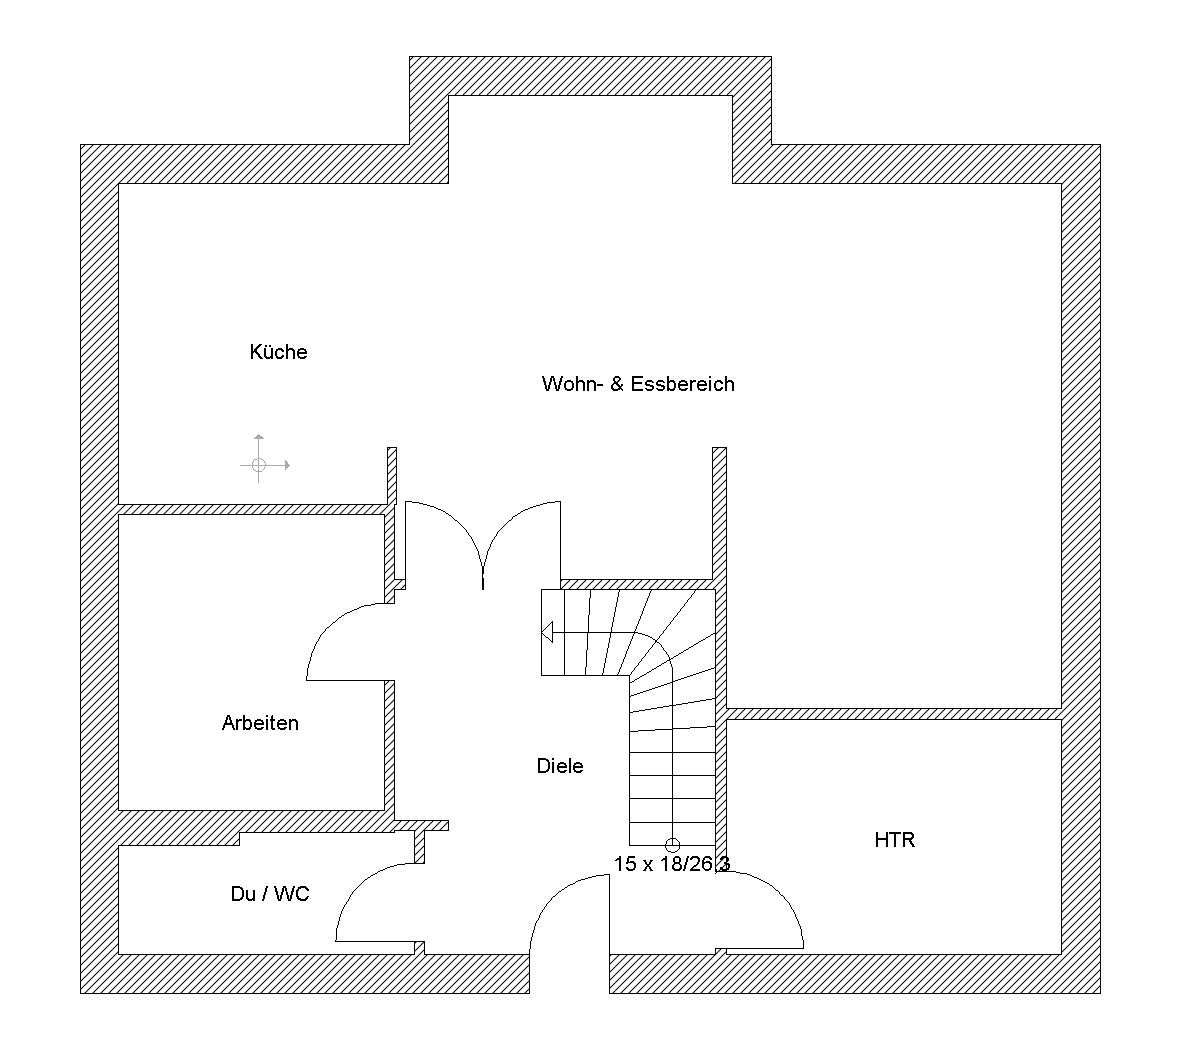 grundstueckplanung-haus-terrasse-stellplaetze-407014-2.jpg